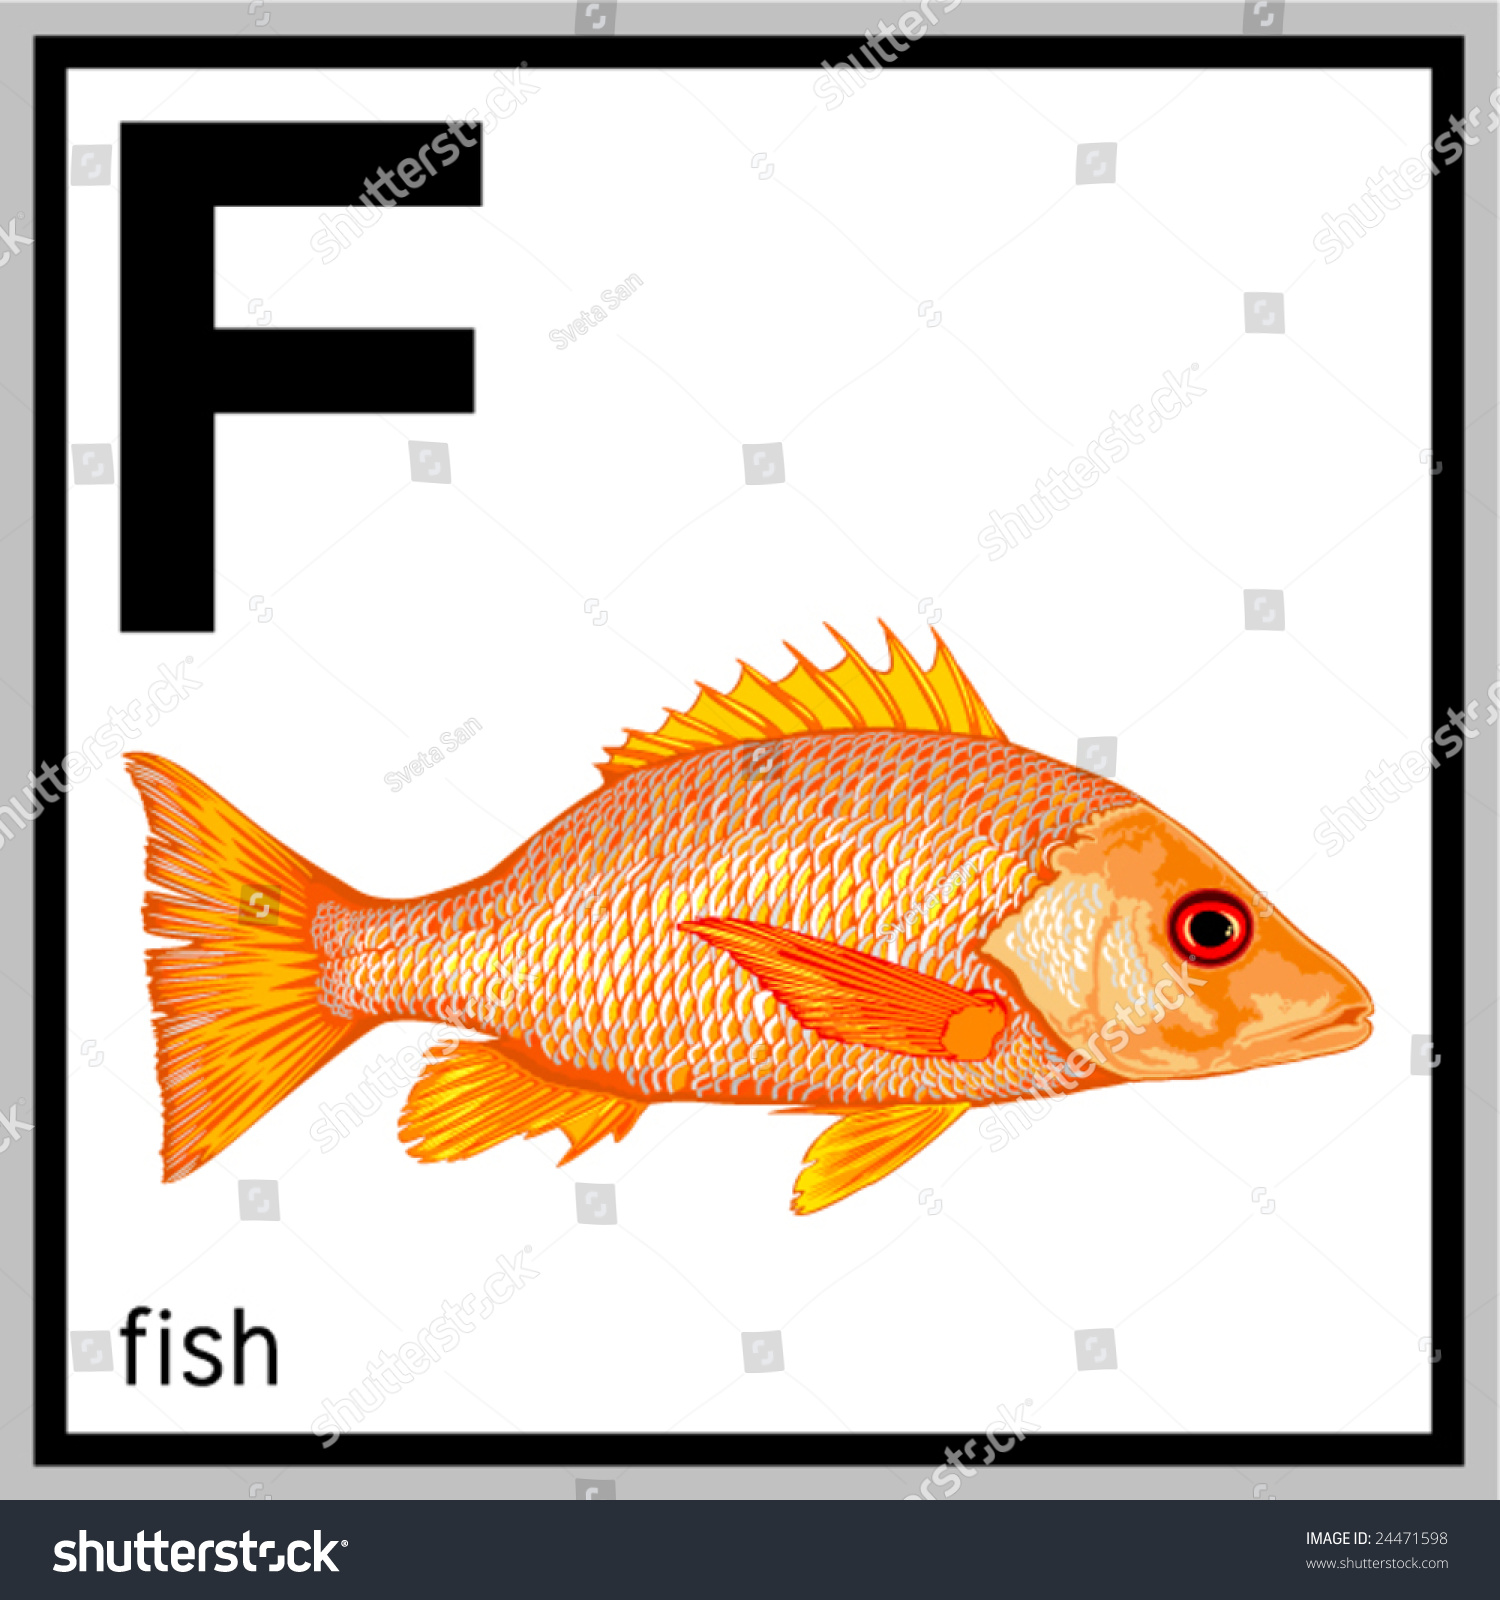 矢量插图的鱼和英文字母F。不包含任何影响